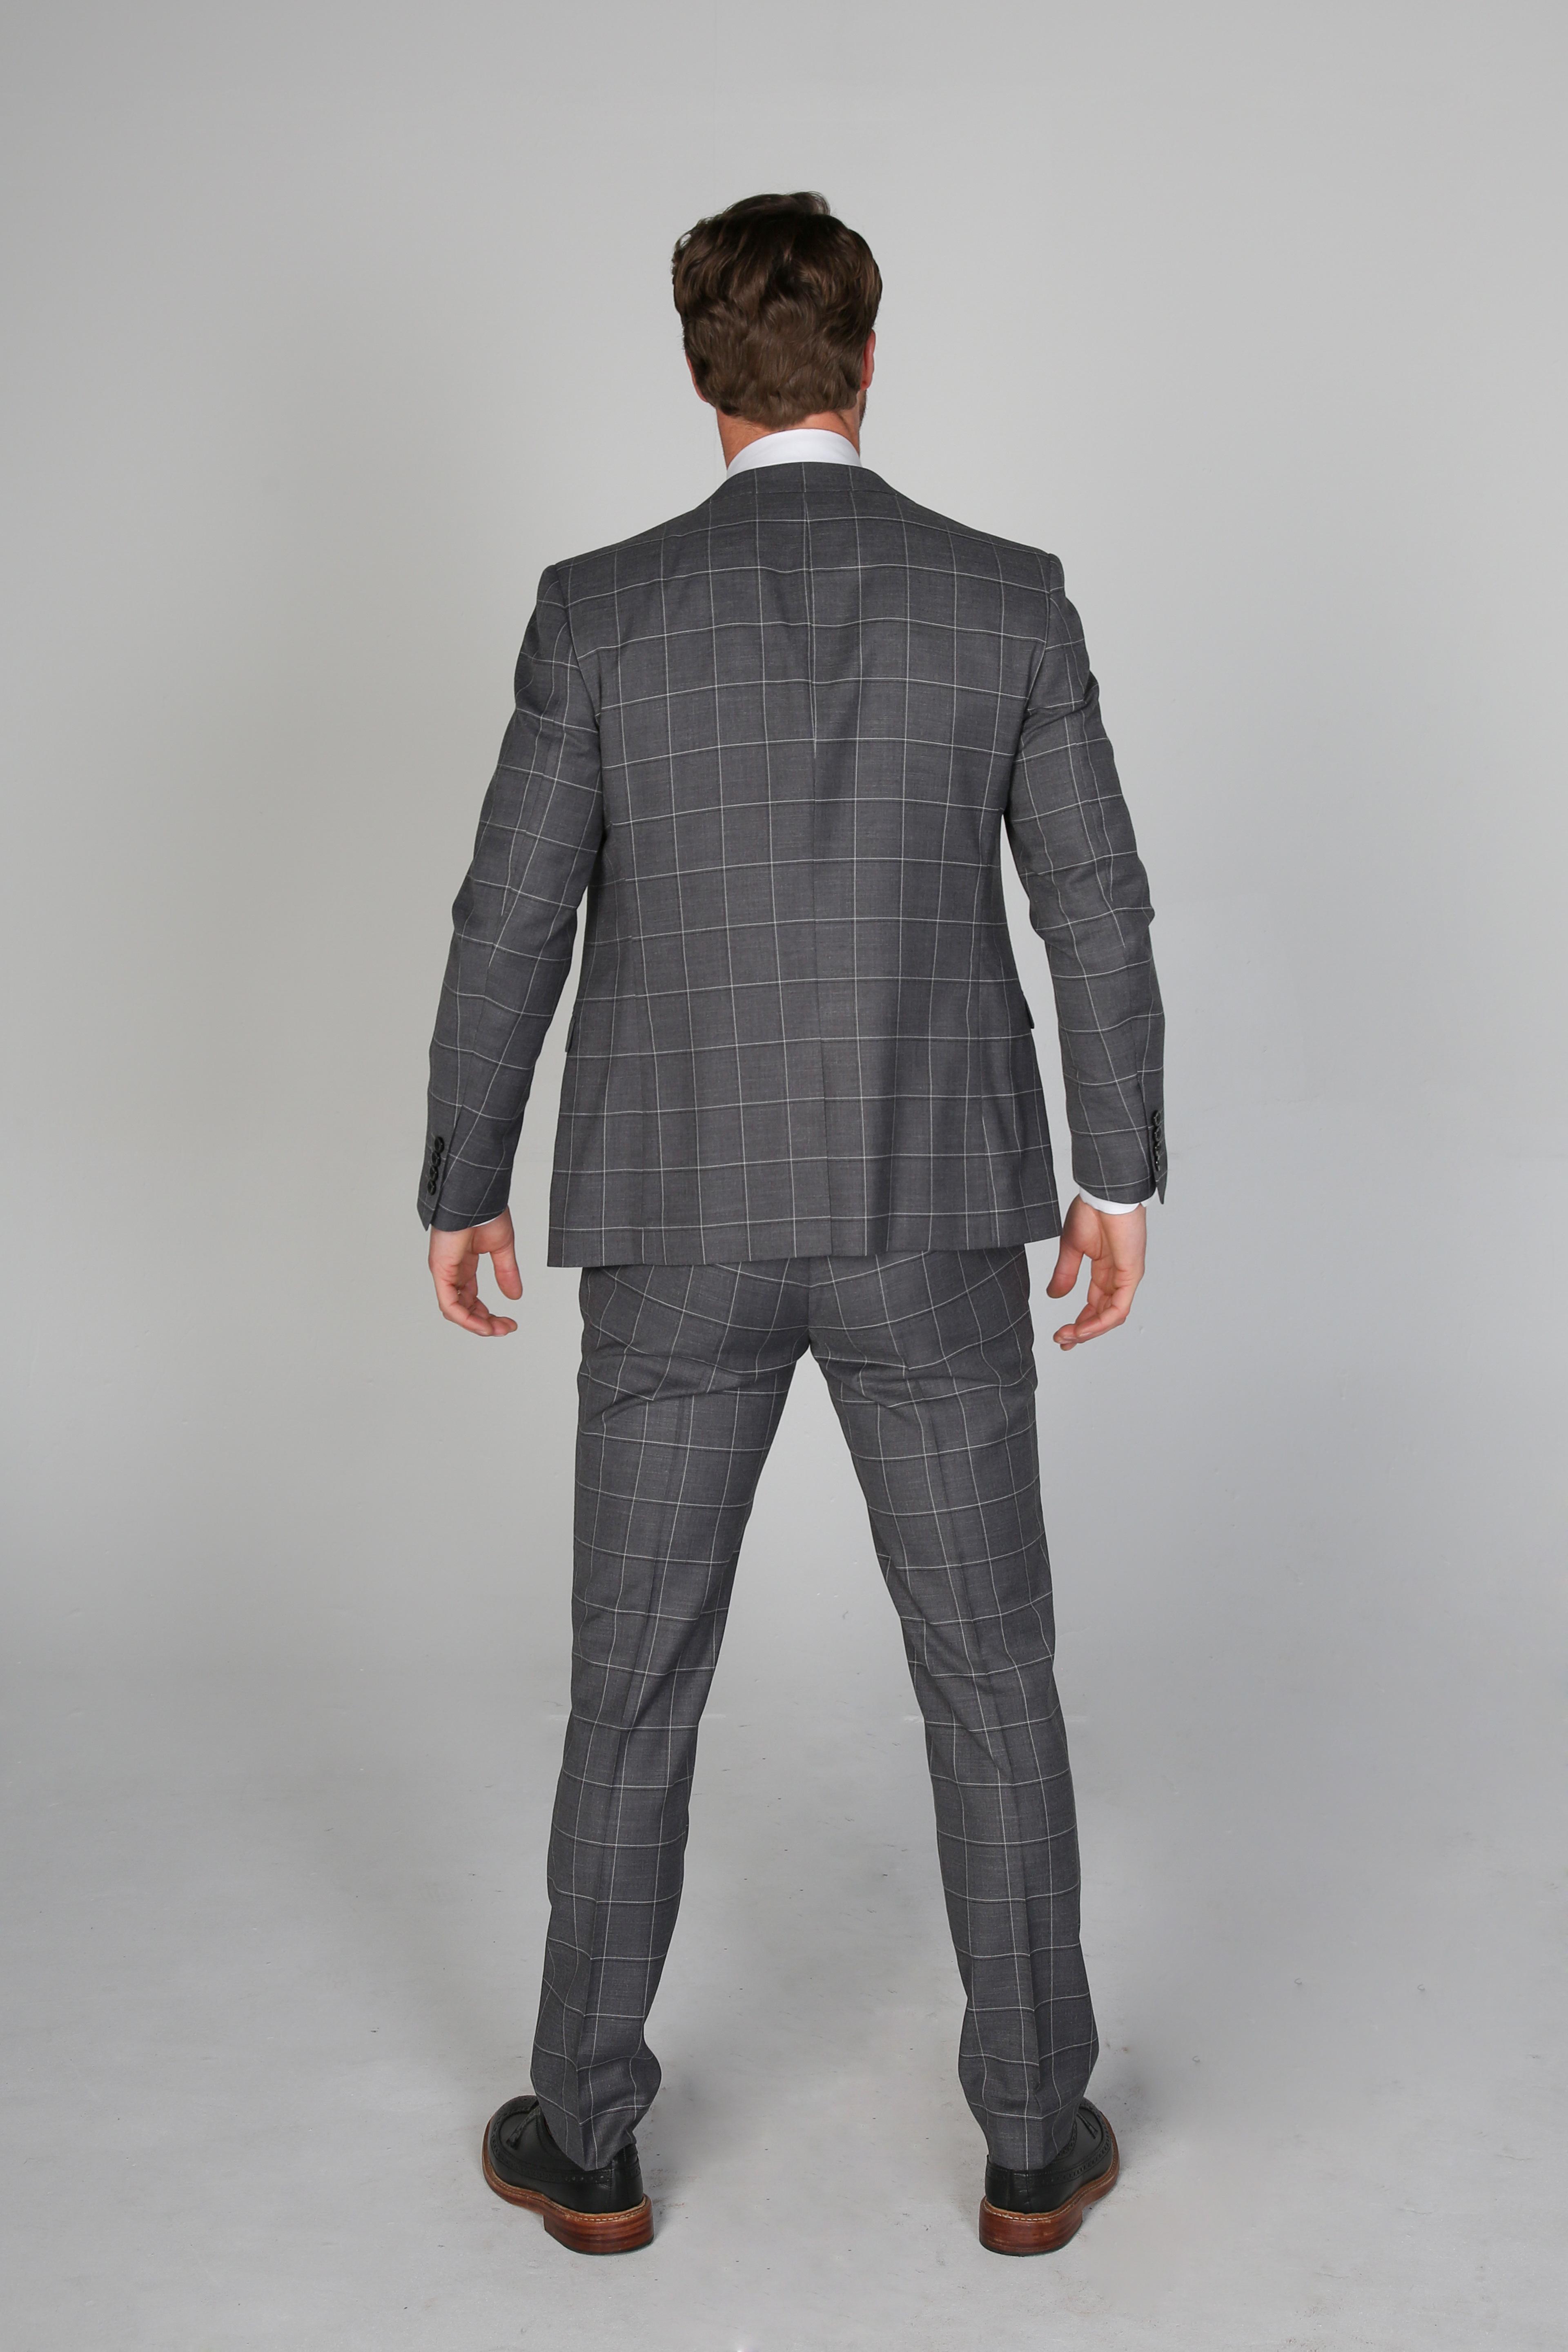 Men’s Check Windowpane Grey Suit Jacket- HOBBS